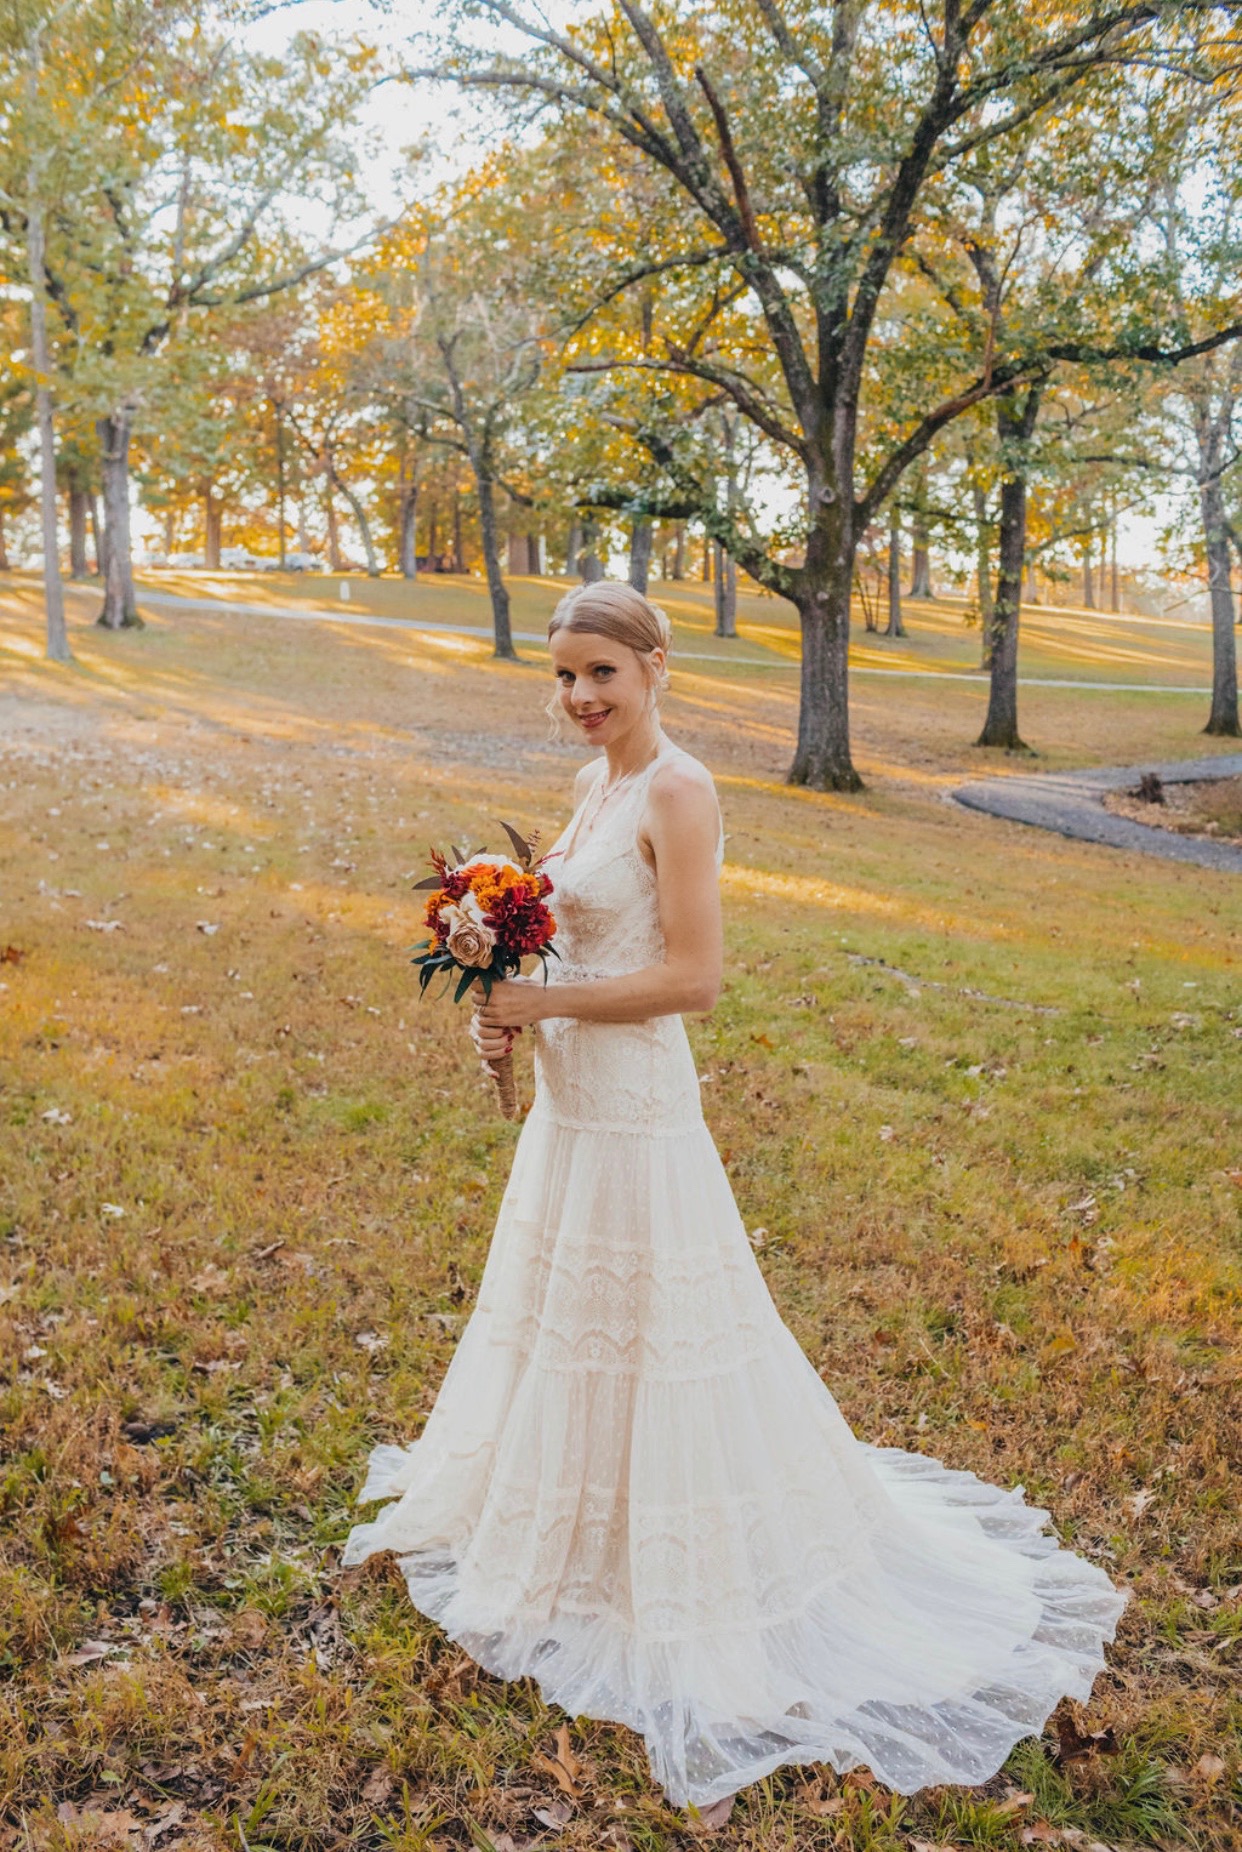 Solo bride holding bouquet